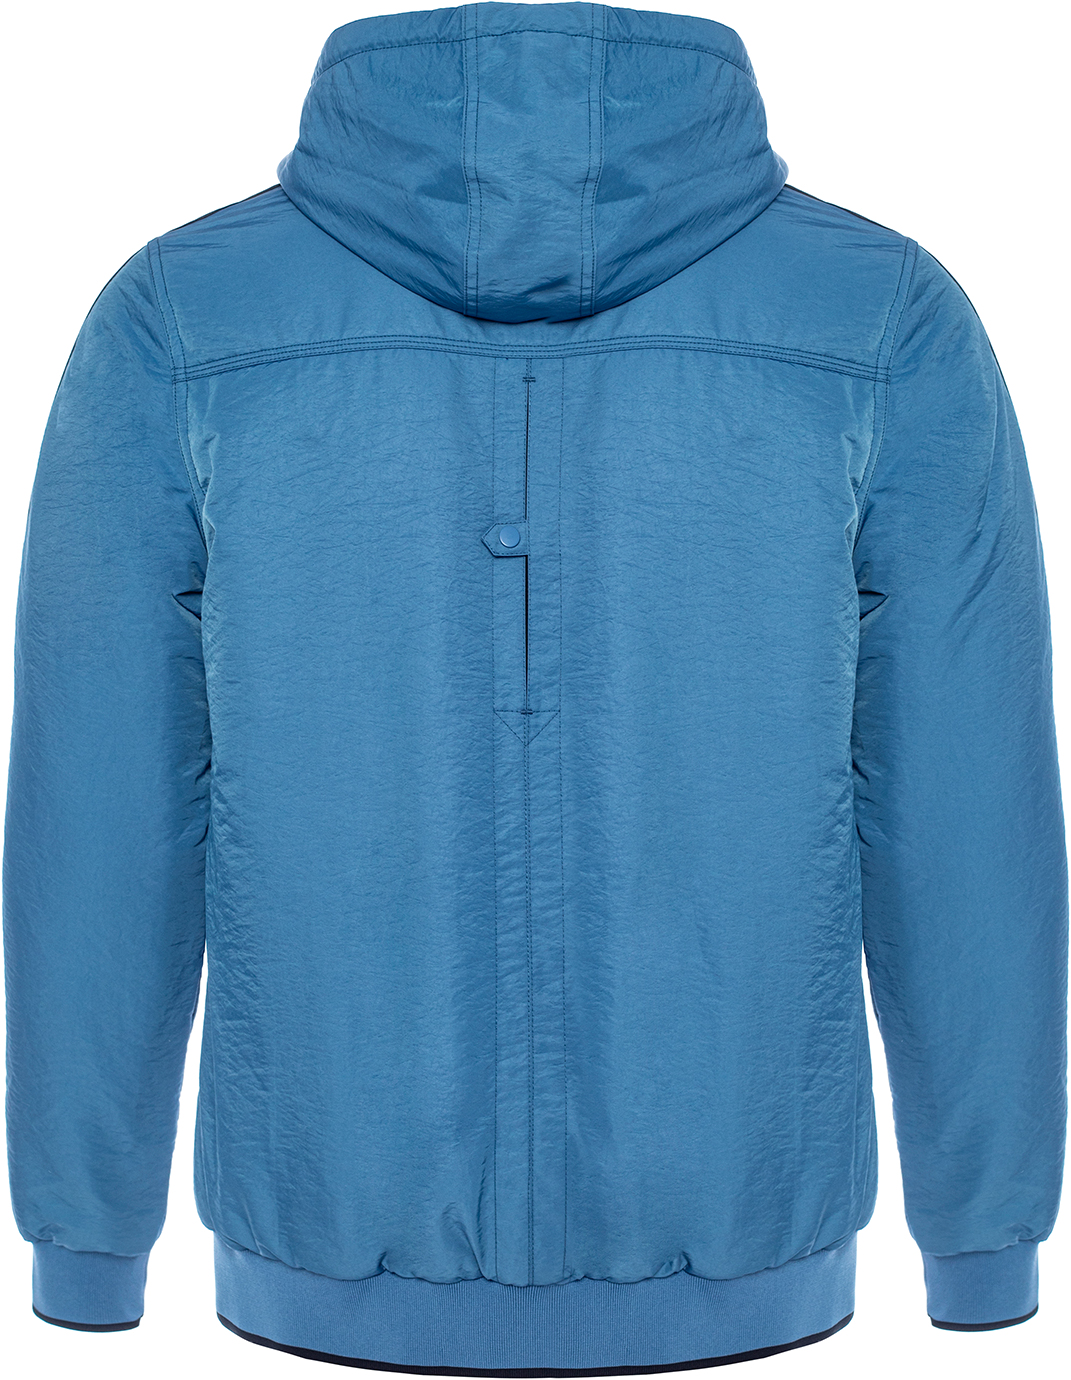 Куртка мужская Bilcee Men's Jackets синяя M